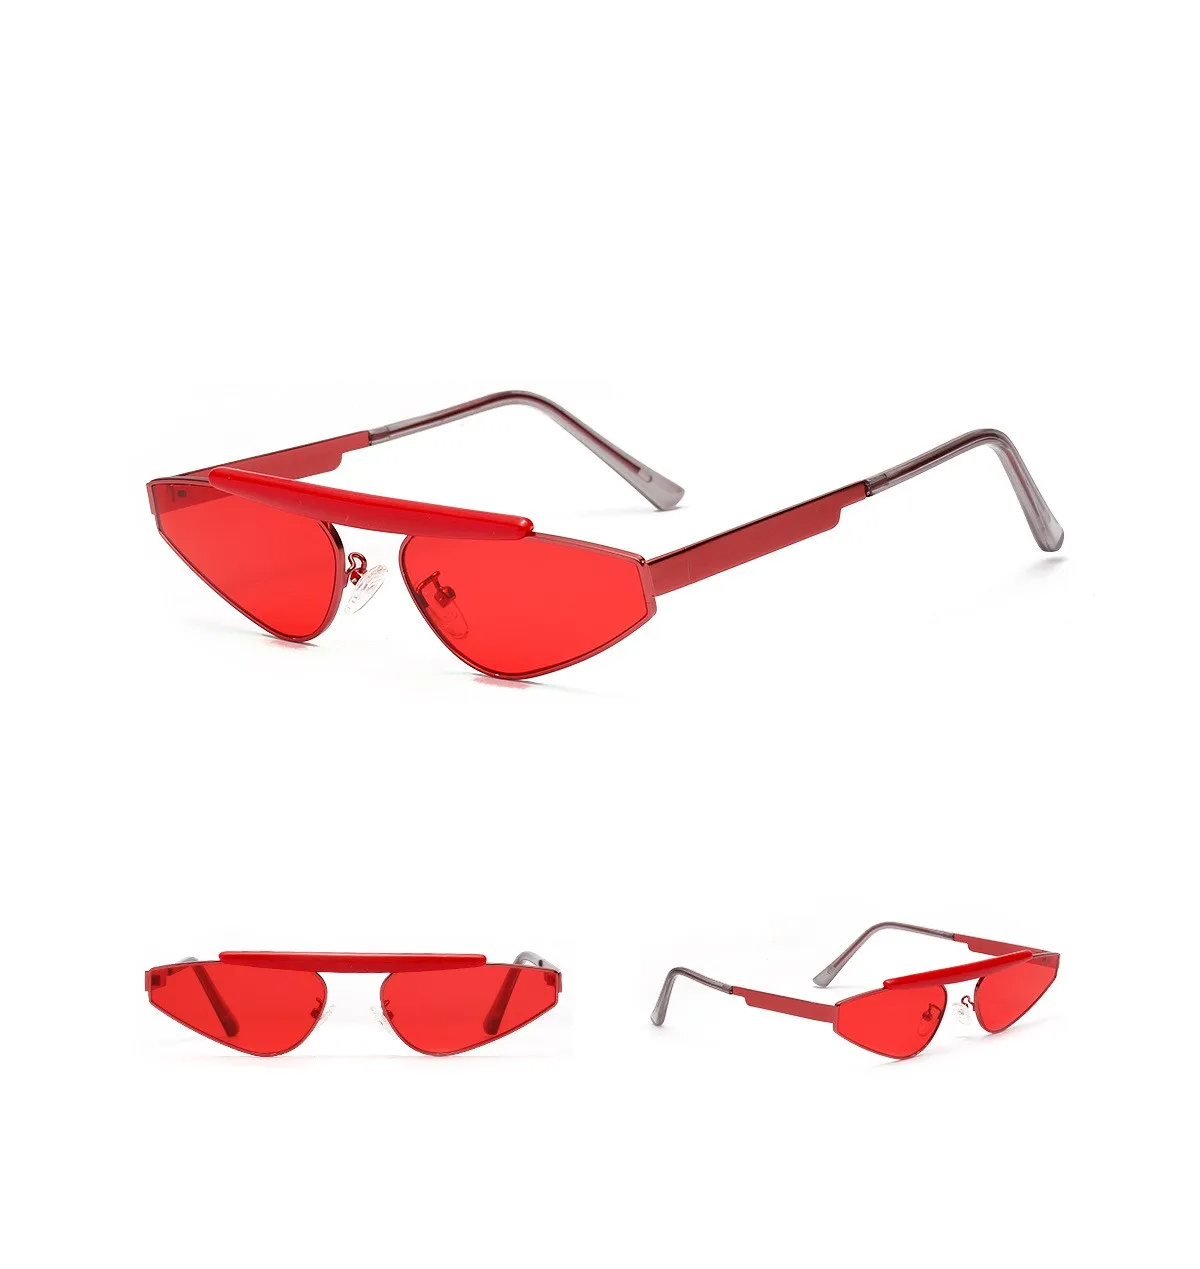 Хорошо продаваемые женские солнцезащитные очки, брендовые цветные ретро очки, женские модные солнцезащитные очки из бутика